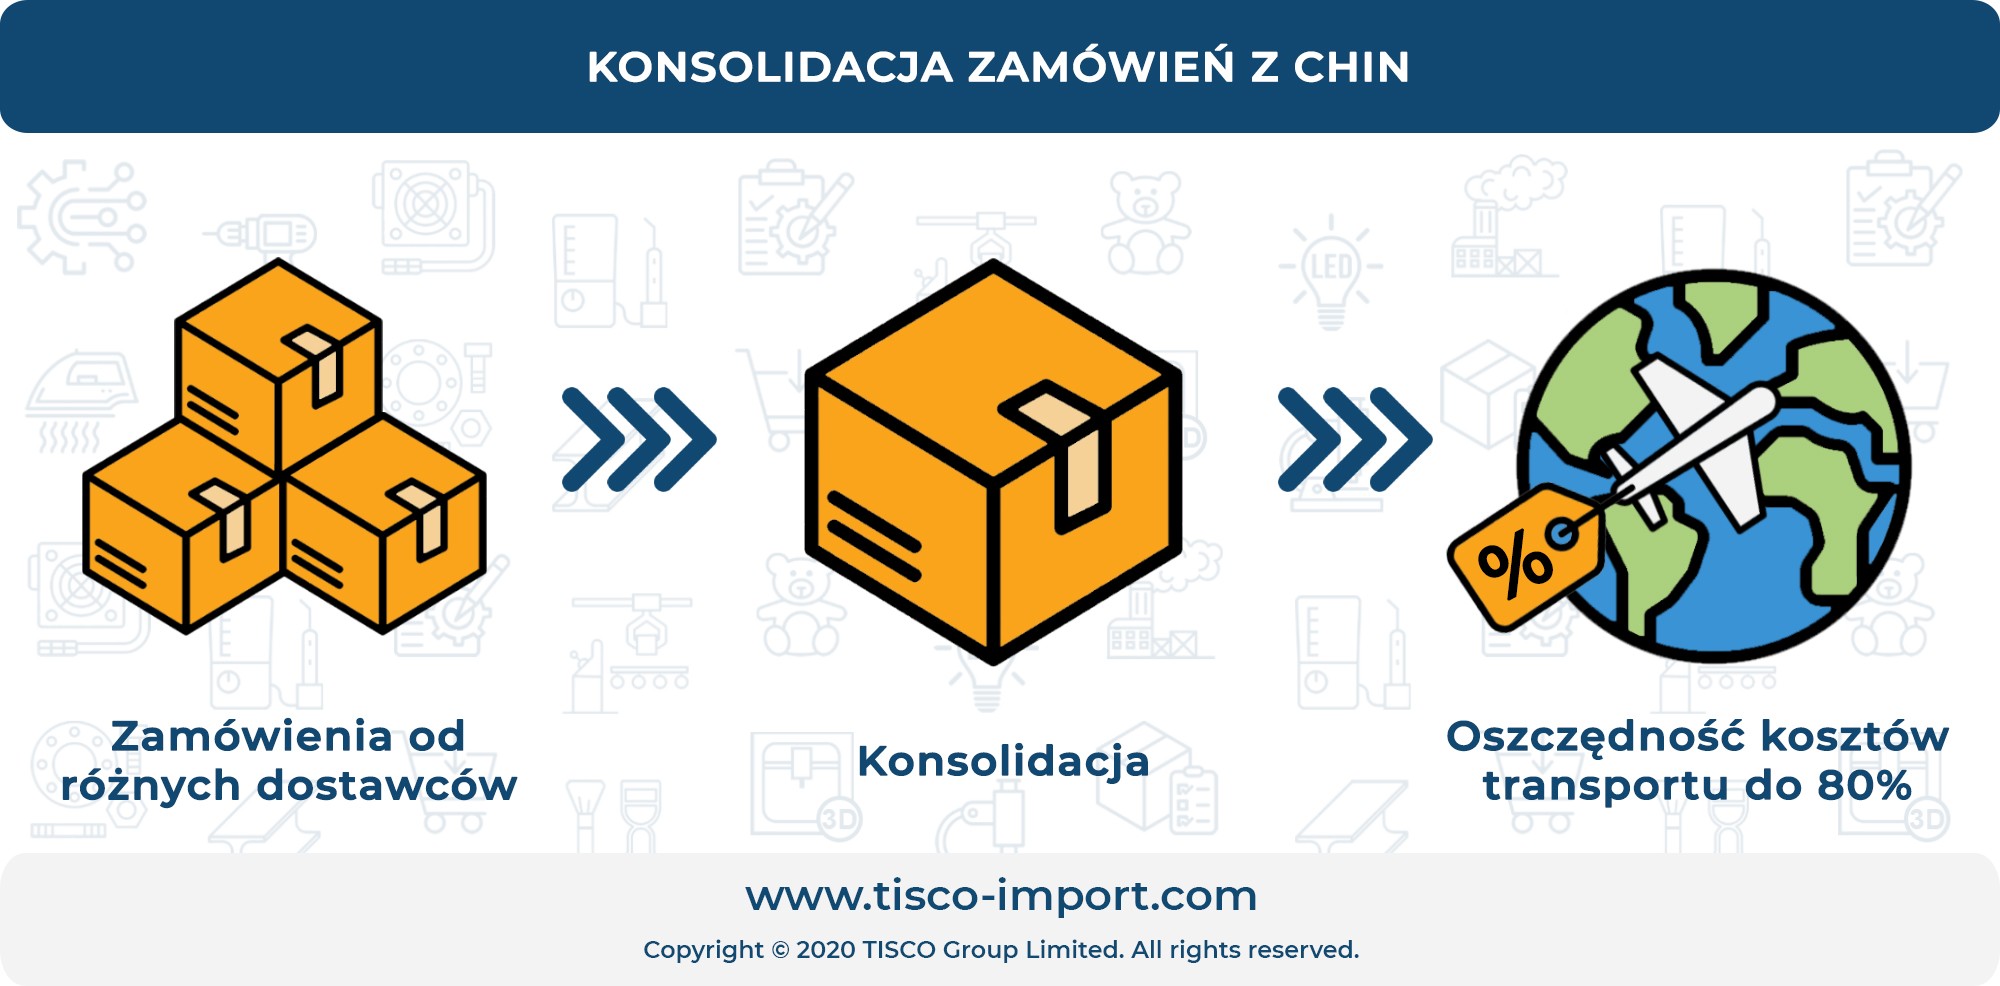 konsolidacja zamowien z chin infografika tisco import